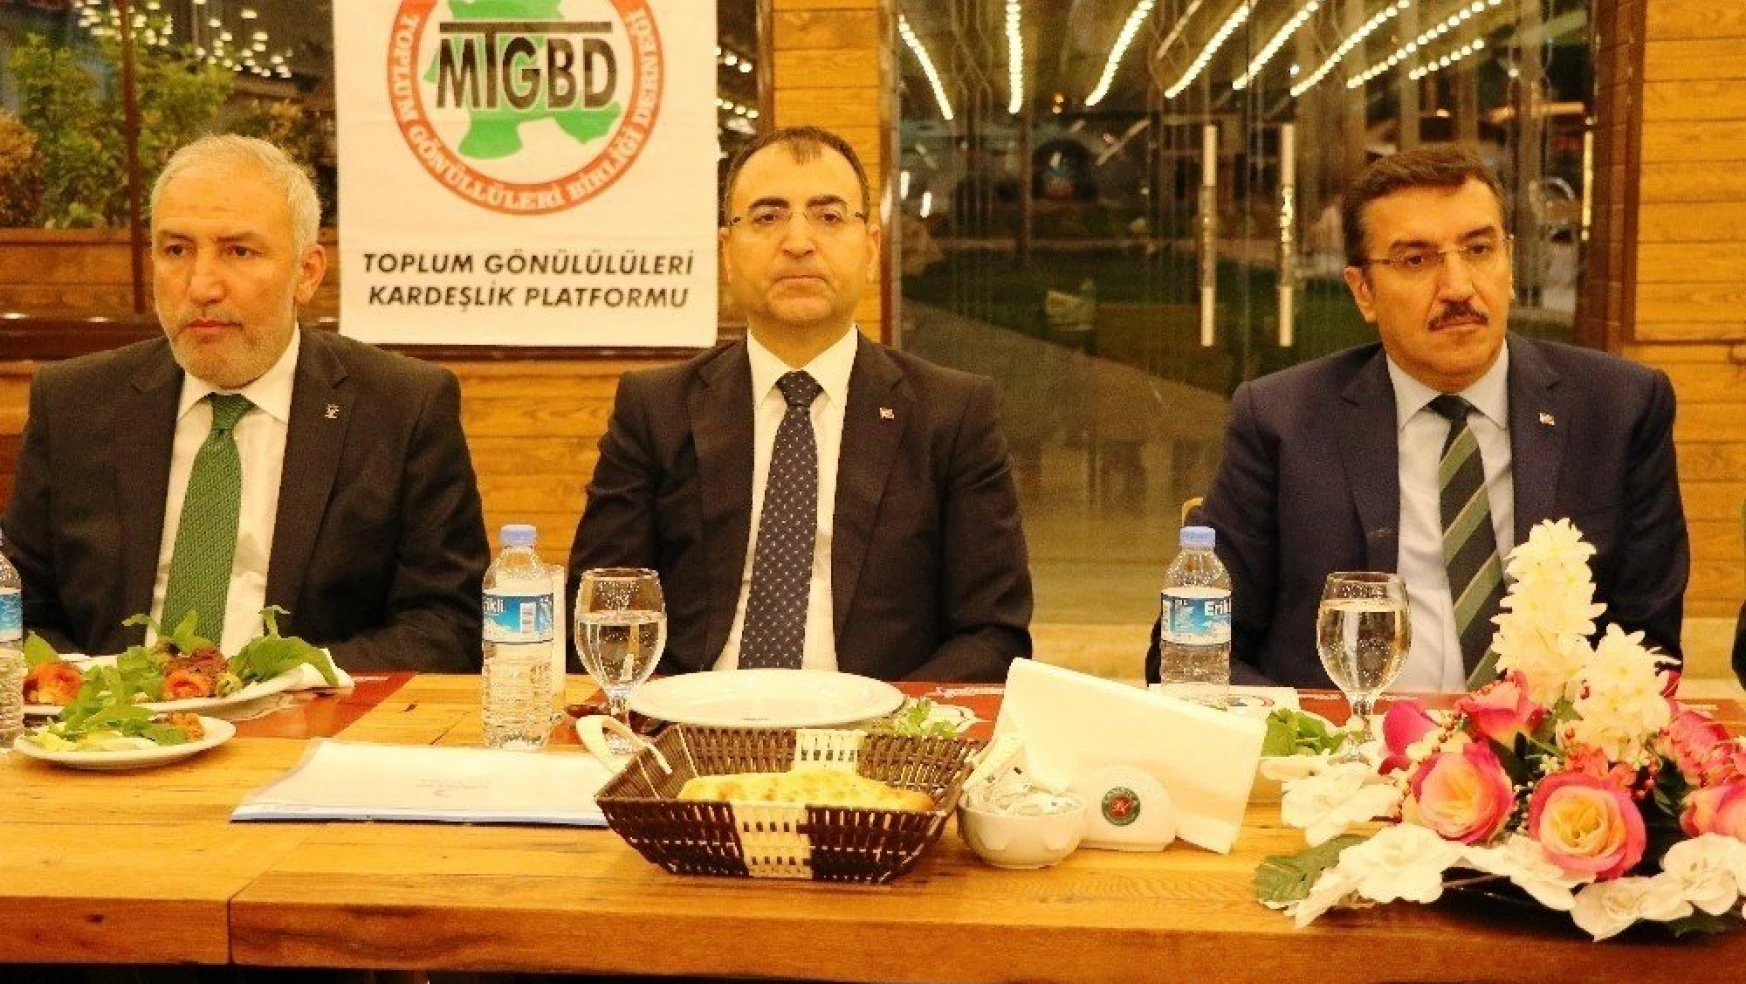 Gümrük ve Ticaret Bakanı Bülent Tüfenkci:
